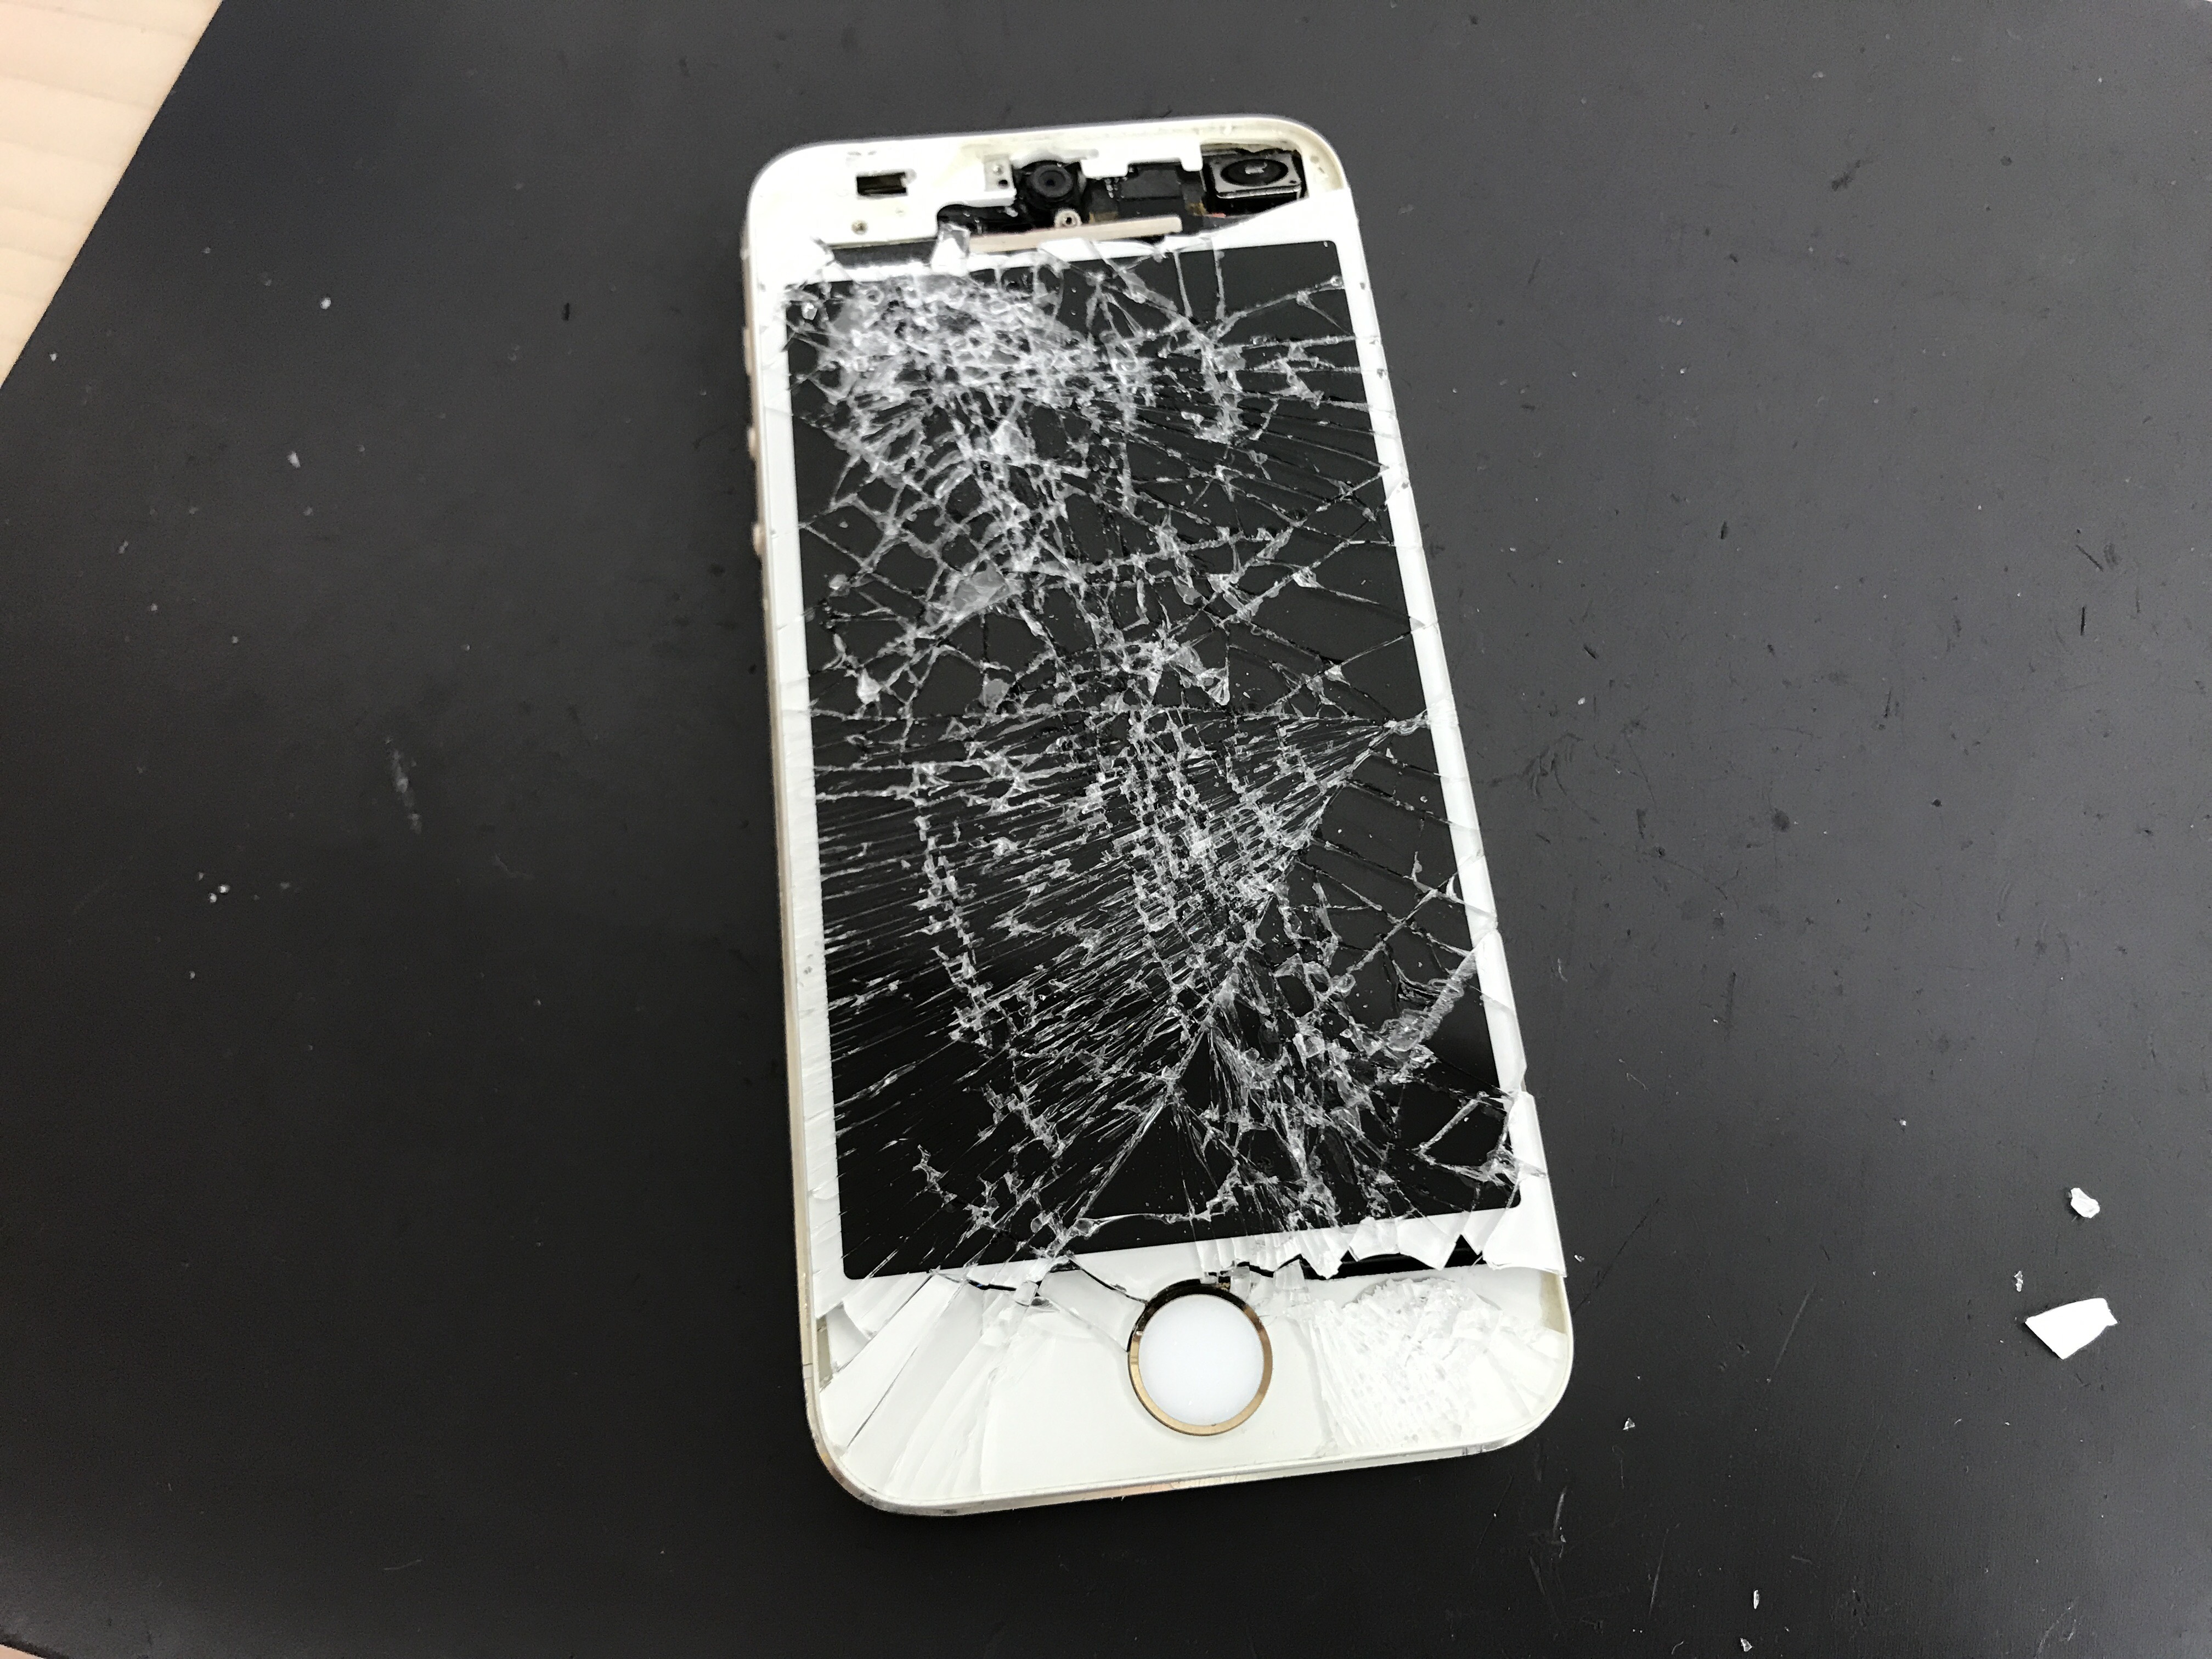 Docomoのiphoneとandroidと比べ画面は割れやすいのか Iphone修理なら 全国109店舗の安心 激安 即日のクイックへ